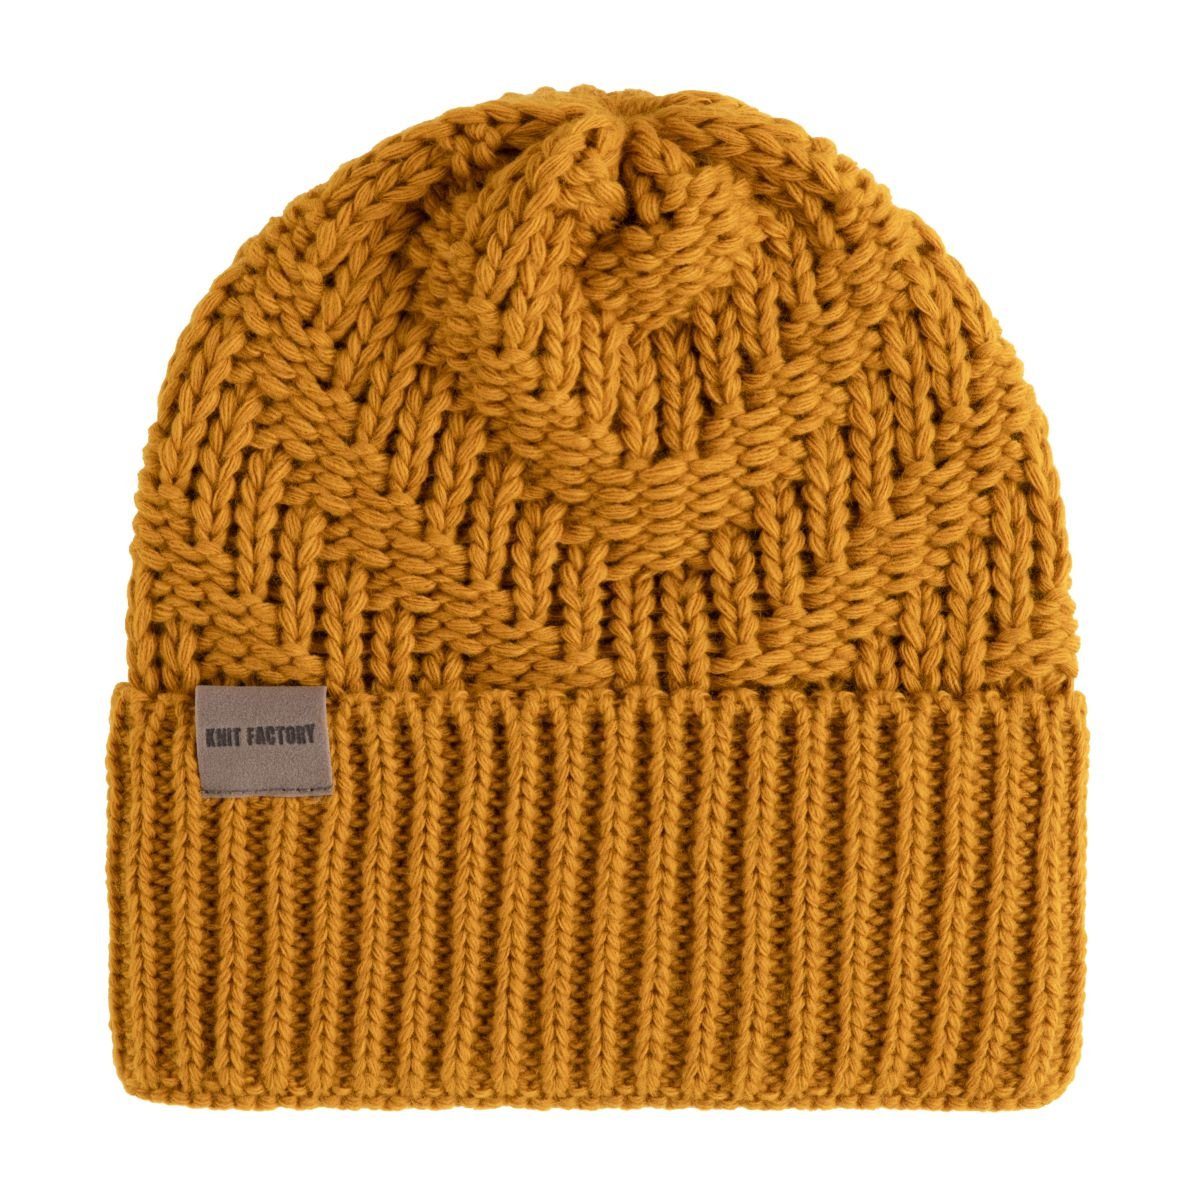 Knit Factory Strickmütze Sally Mützen One Size Glatt Gelb (1-St) Mütze Strickmütze Kopfbedeckung Hut Wollmütze